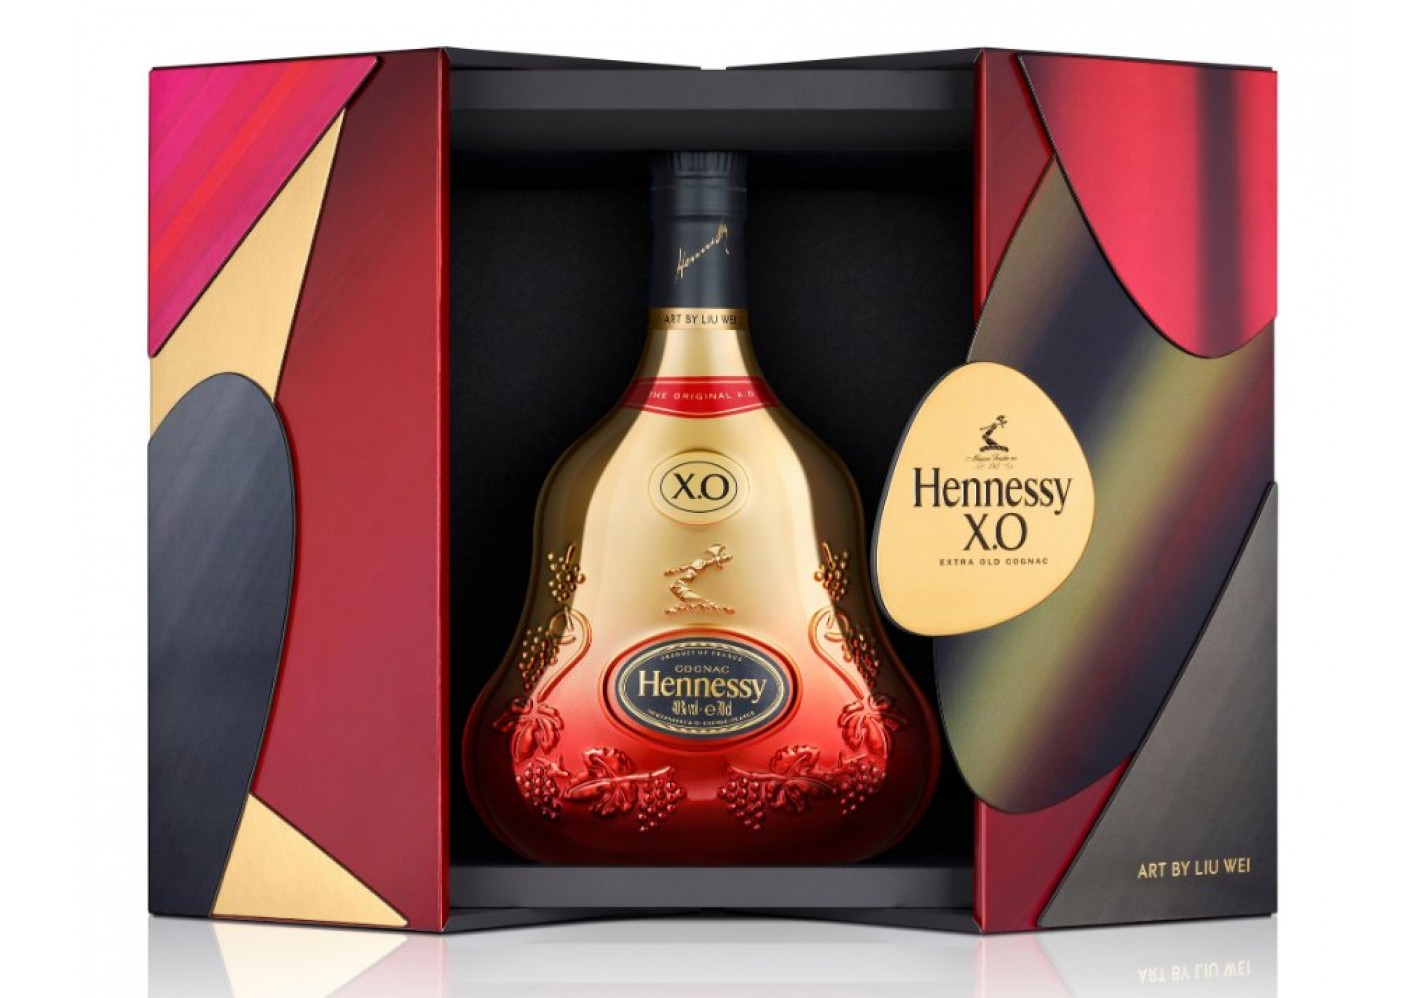 Hennessy XO Lunar New Year 2021 Limited Edition by Liu Wei Cognac